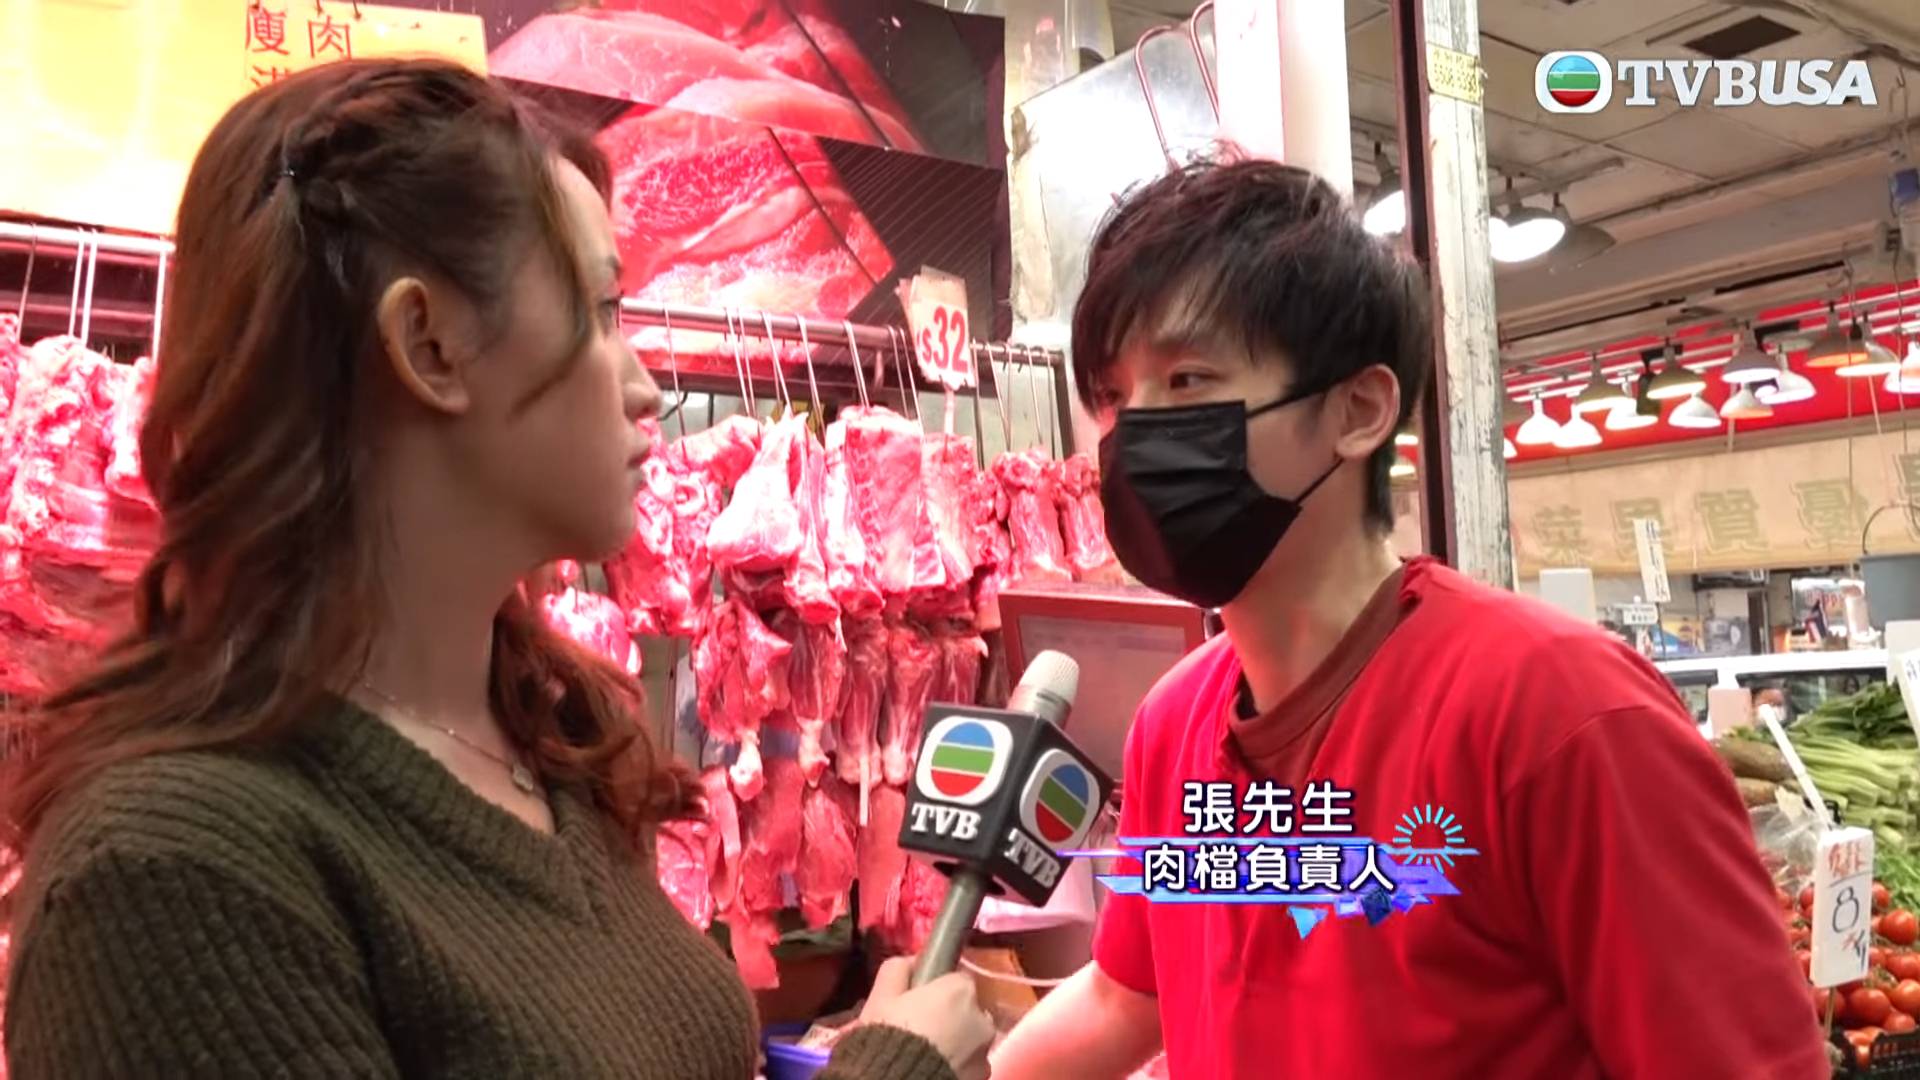 猪肉档 荃湾 张先生表示可能係外来老鼠，因为杨屋道本来就很多老鼠出没，自家猪肉档很难养到老鼠，事关佢哋每日都会清枱洗地